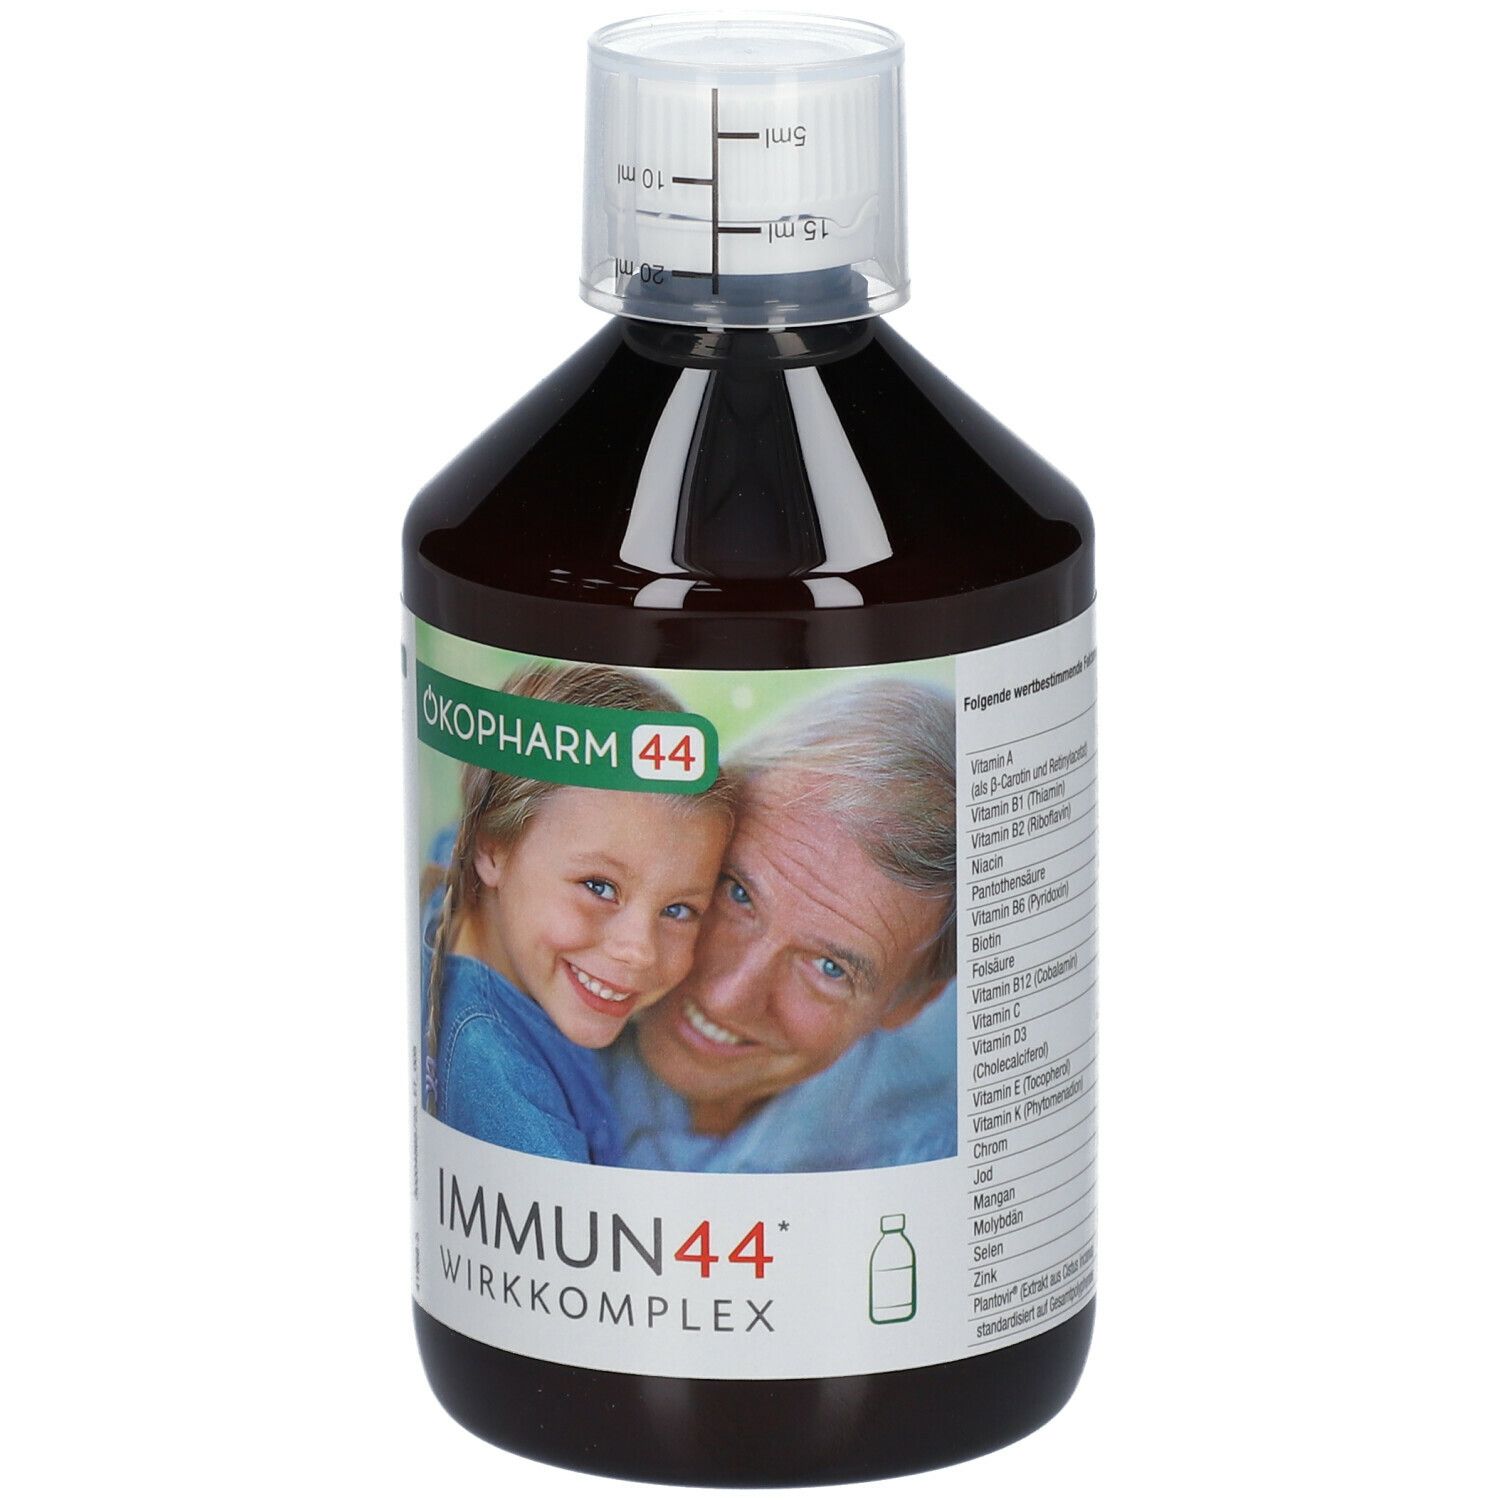 Ökopharm44® Immun44® Saft: Für die ganze Familie